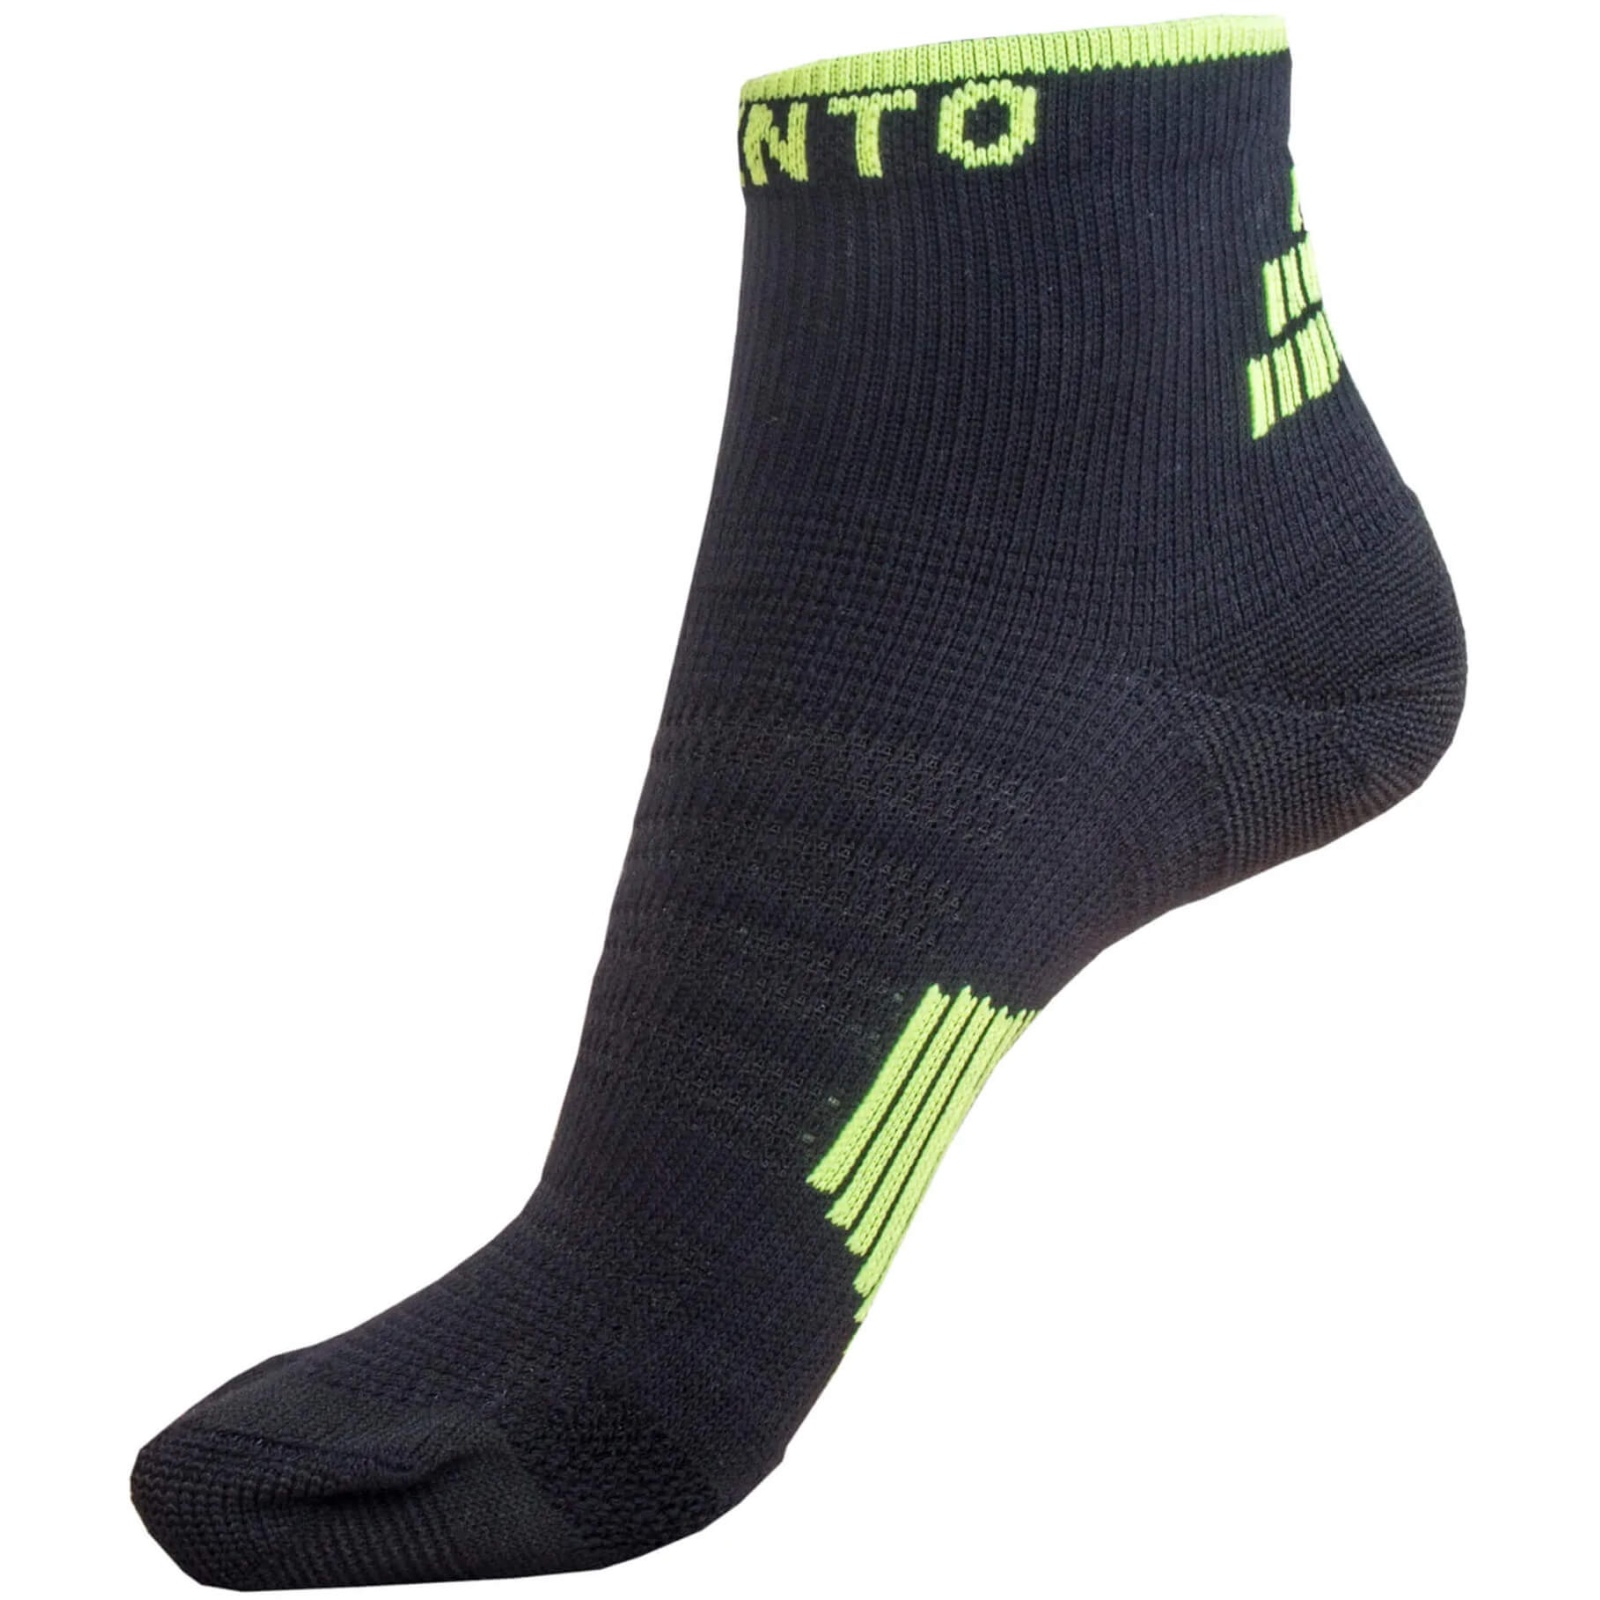 Ponožky RUNTO Sprint černé, vel. 44-47